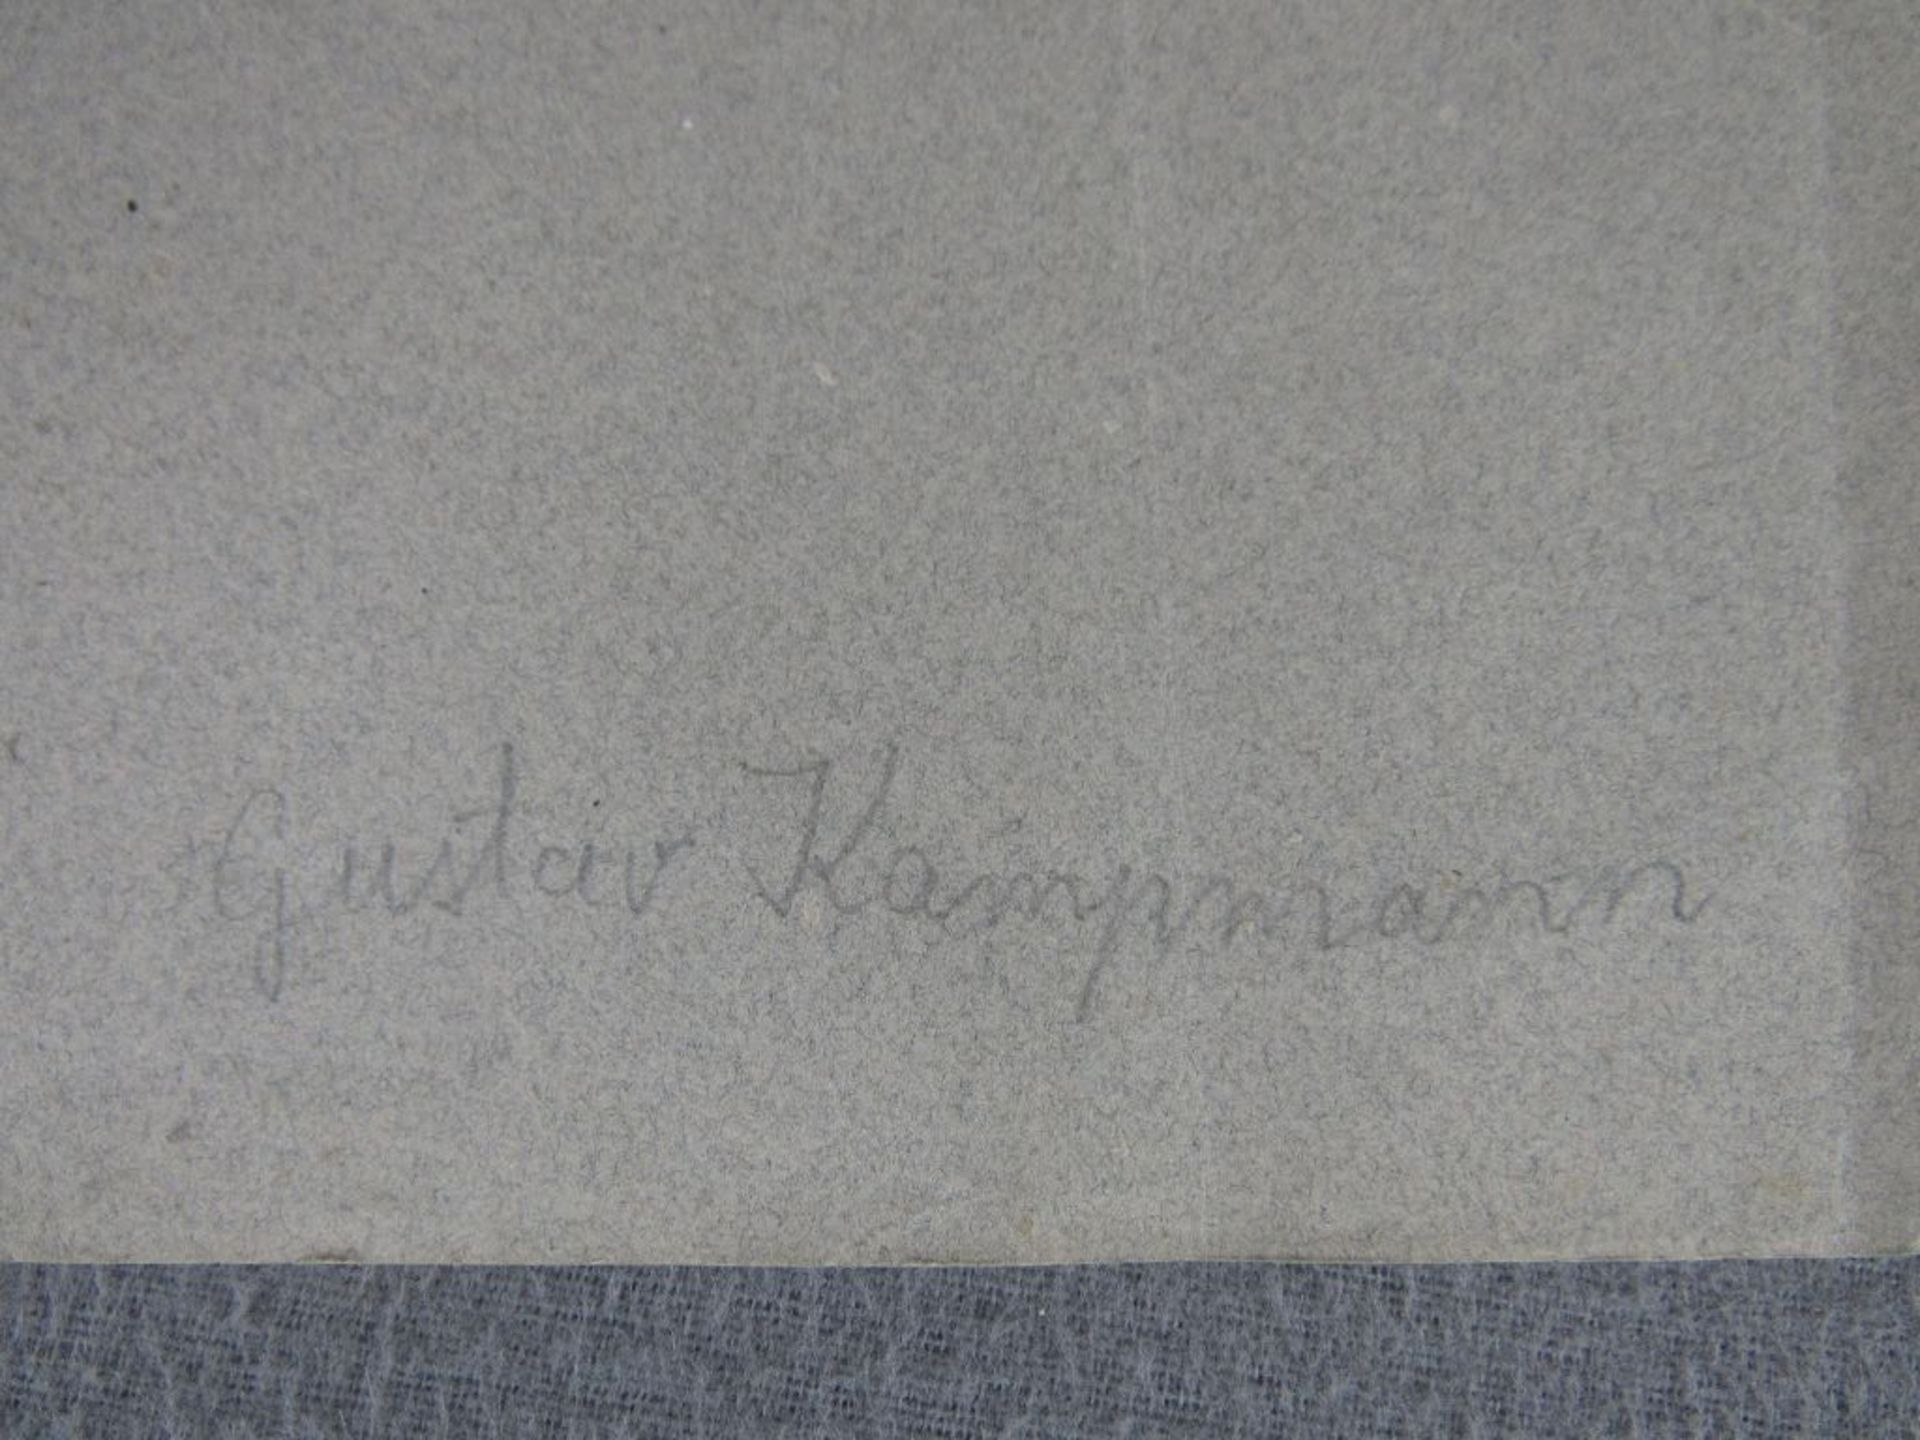 Zeichnung von Gustav Kampmann (1859 Boppard-1917 Bad Godesberg) rechts unten im original - Bild 4 aus 5